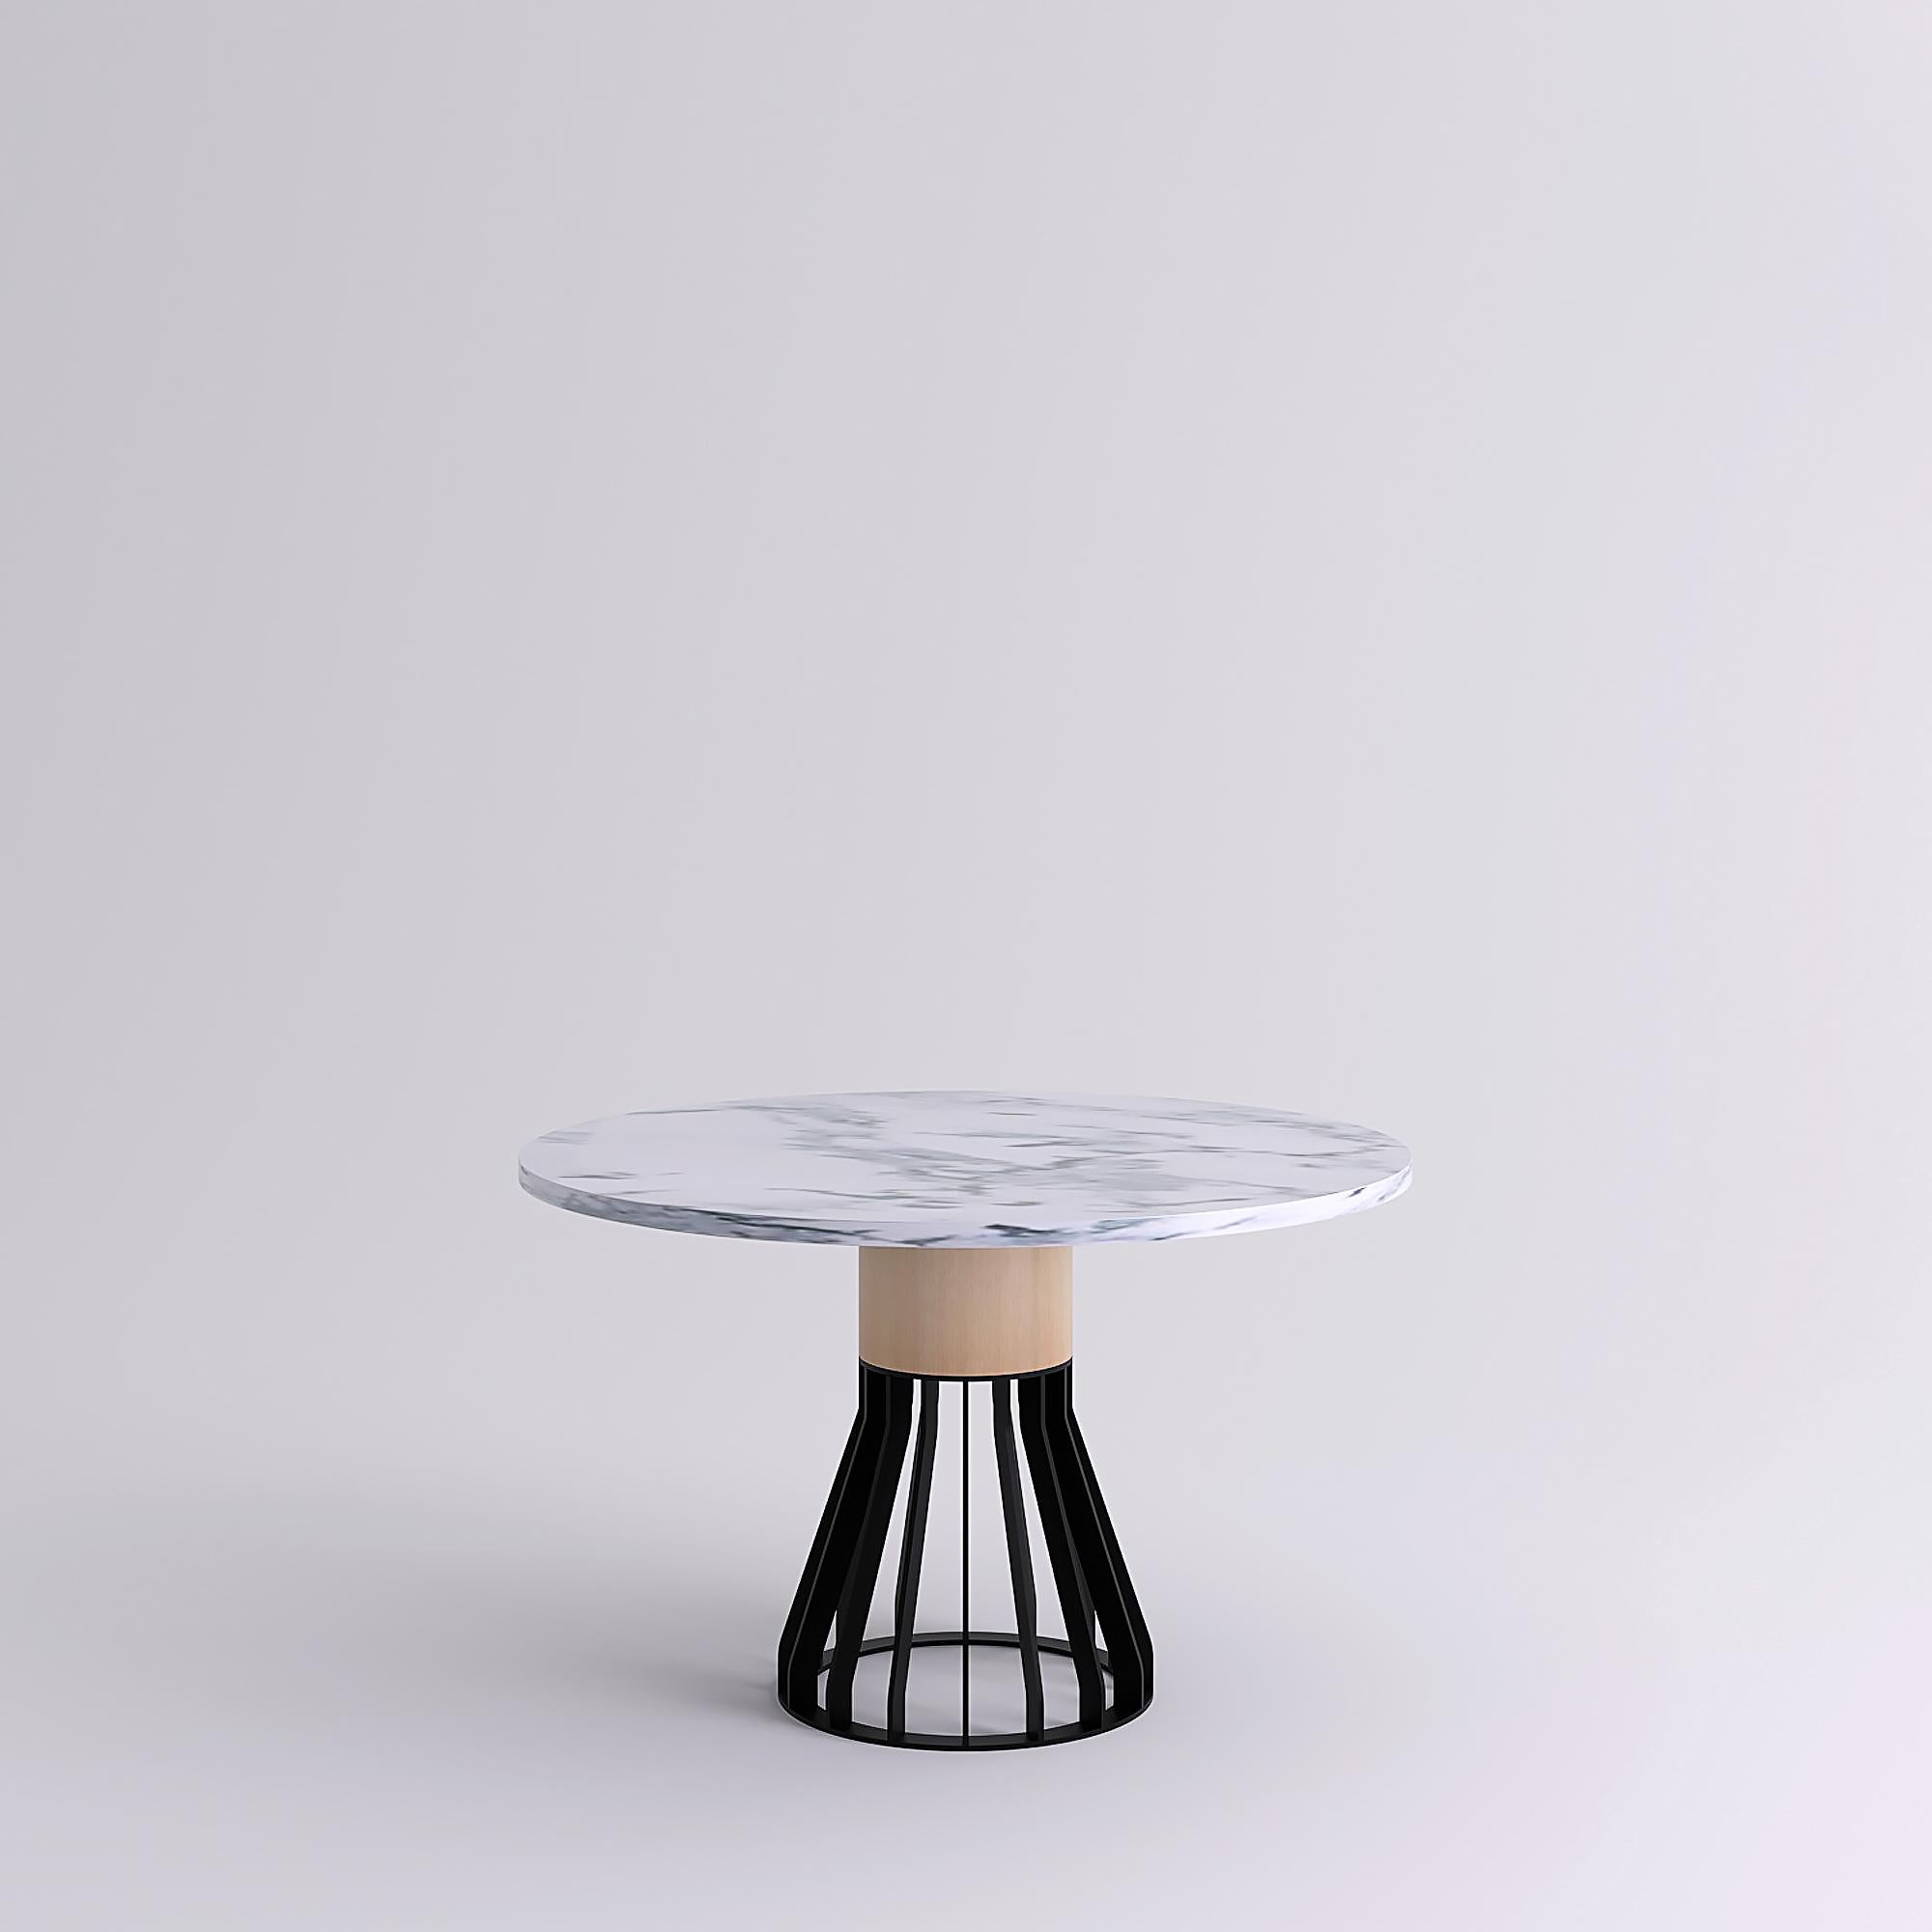 Mewoma ist eine Tischfamilie mit einer skulpturalen Präsenz.
Der Tisch besteht aus einem lasergeschnittenen Metallsockel, auf dem eine große Holzsäule steht, die die Marmorplatte trägt.
Die drei Materialien gaben dem Tisch seinen Namen: Metall